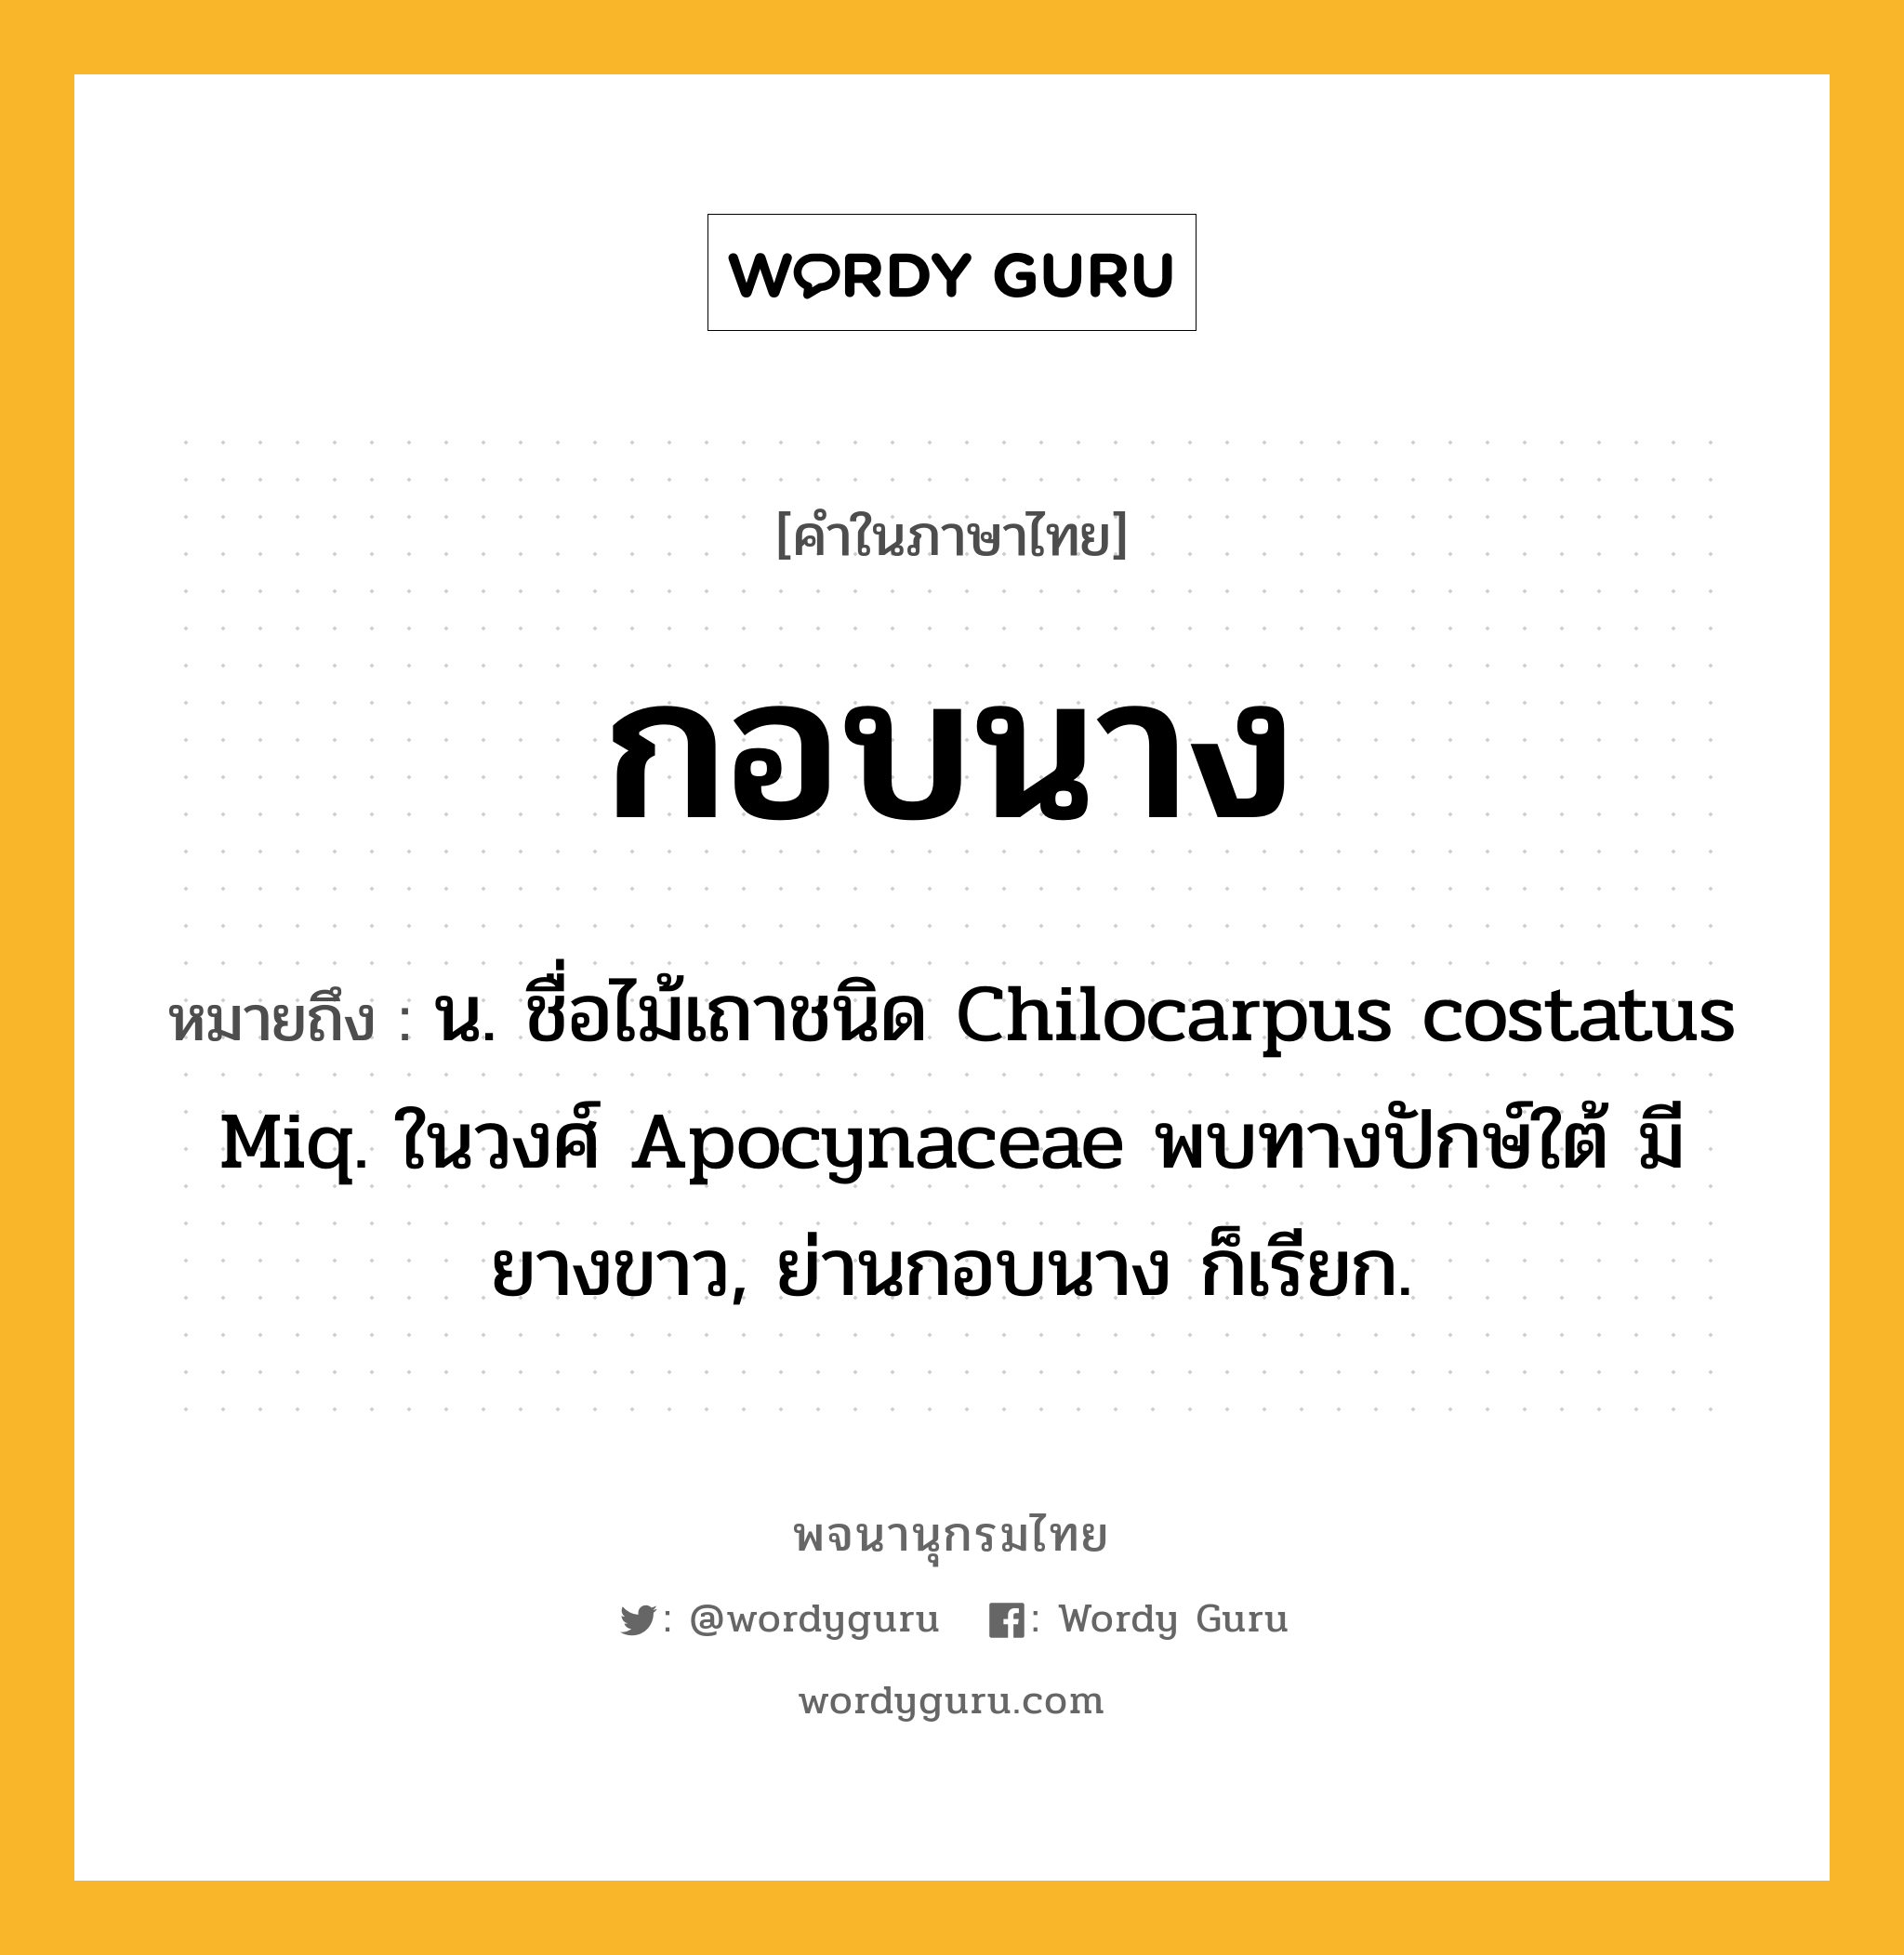 กอบนาง หมายถึงอะไร?, คำในภาษาไทย กอบนาง หมายถึง น. ชื่อไม้เถาชนิด Chilocarpus costatus Miq. ในวงศ์ Apocynaceae พบทางปักษ์ใต้ มียางขาว, ย่านกอบนาง ก็เรียก.